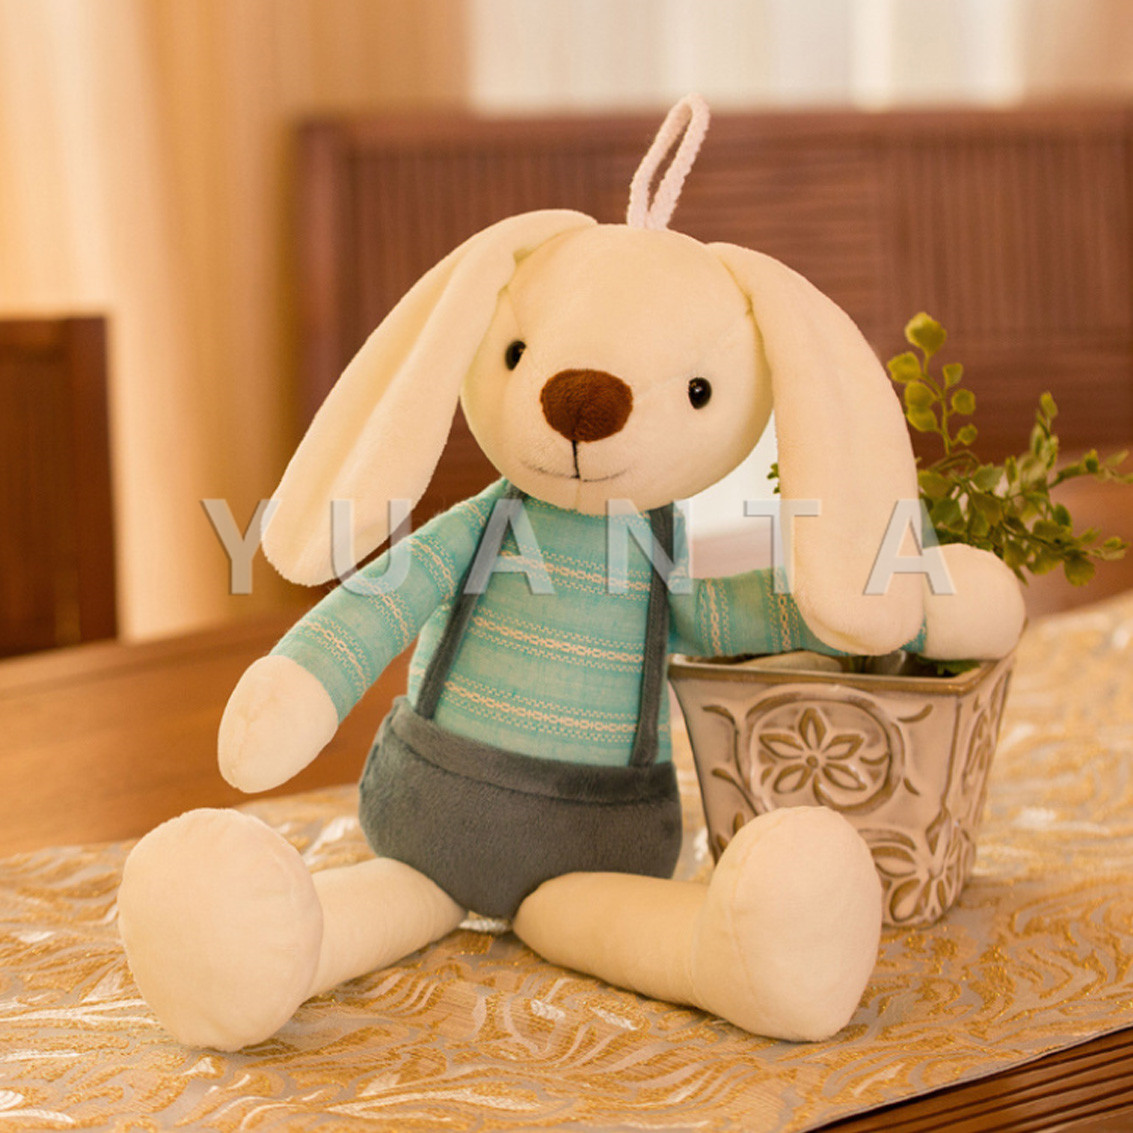 YUANTA ตุ๊กตากระต่ายของเล่นสำหรับเด็ก ของเล่นสำหรับเด็ก ของเล่นเด็ก Bunny toy